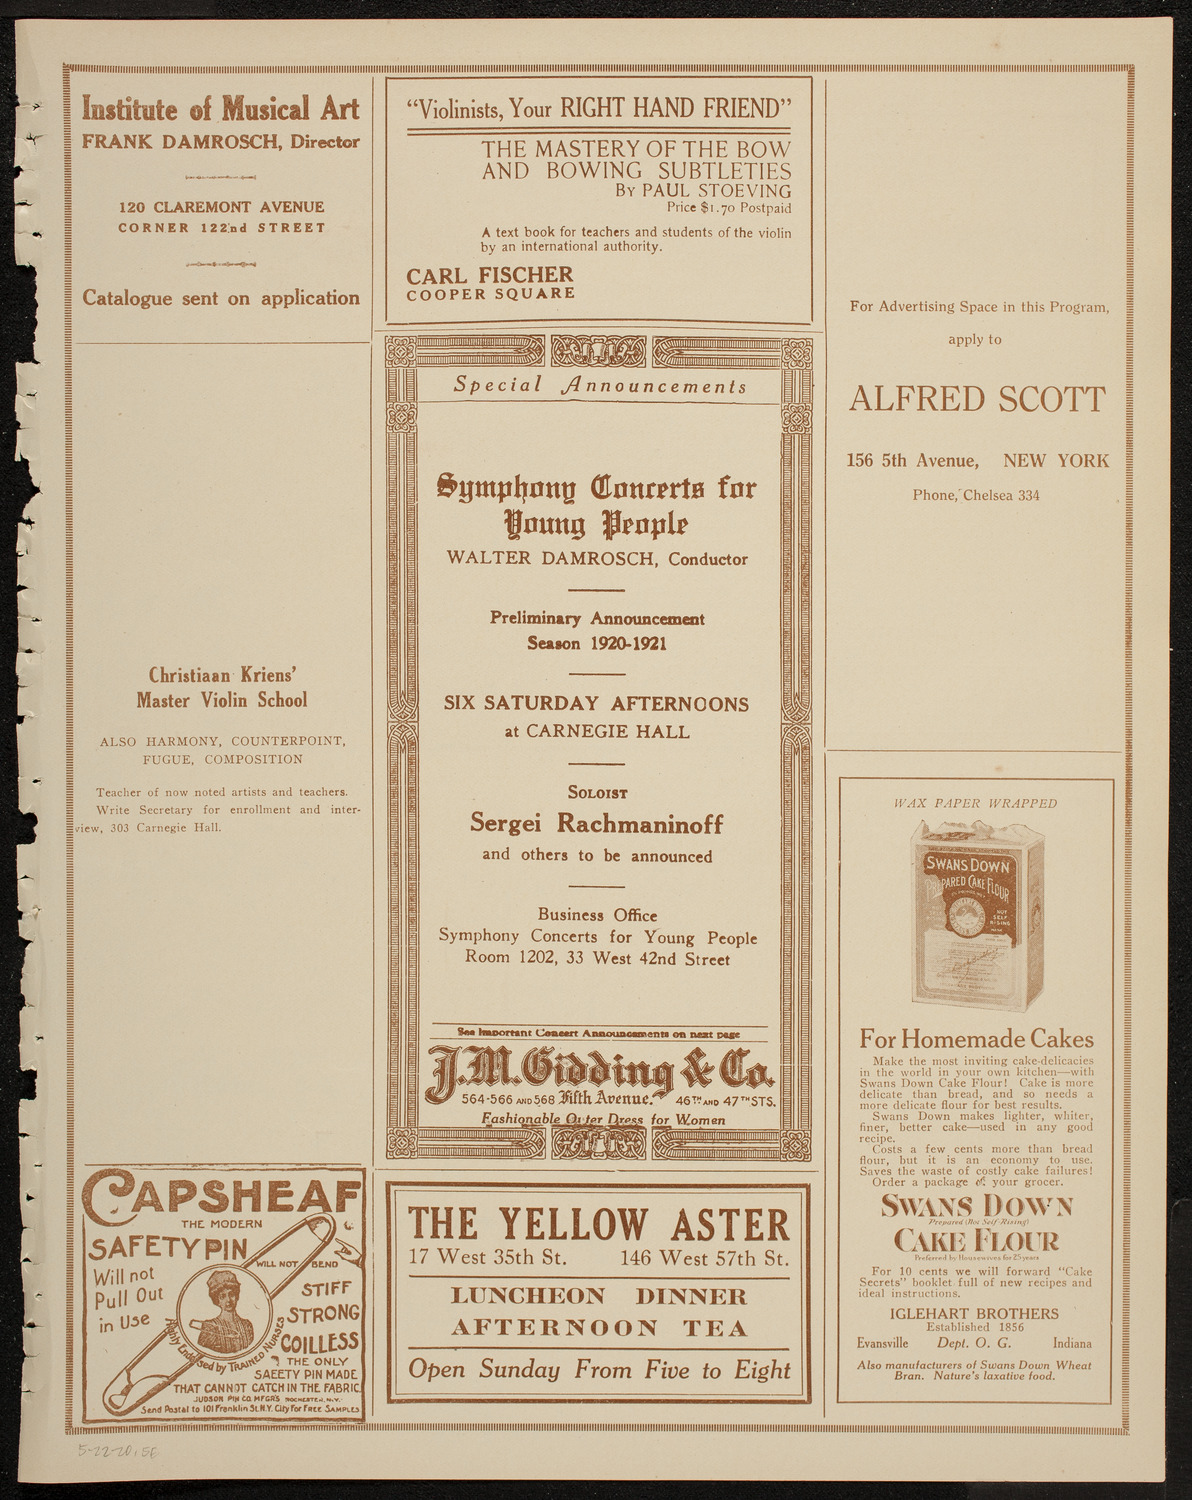 Gala Masonic Music Festival, May 22, 1920, program page 9